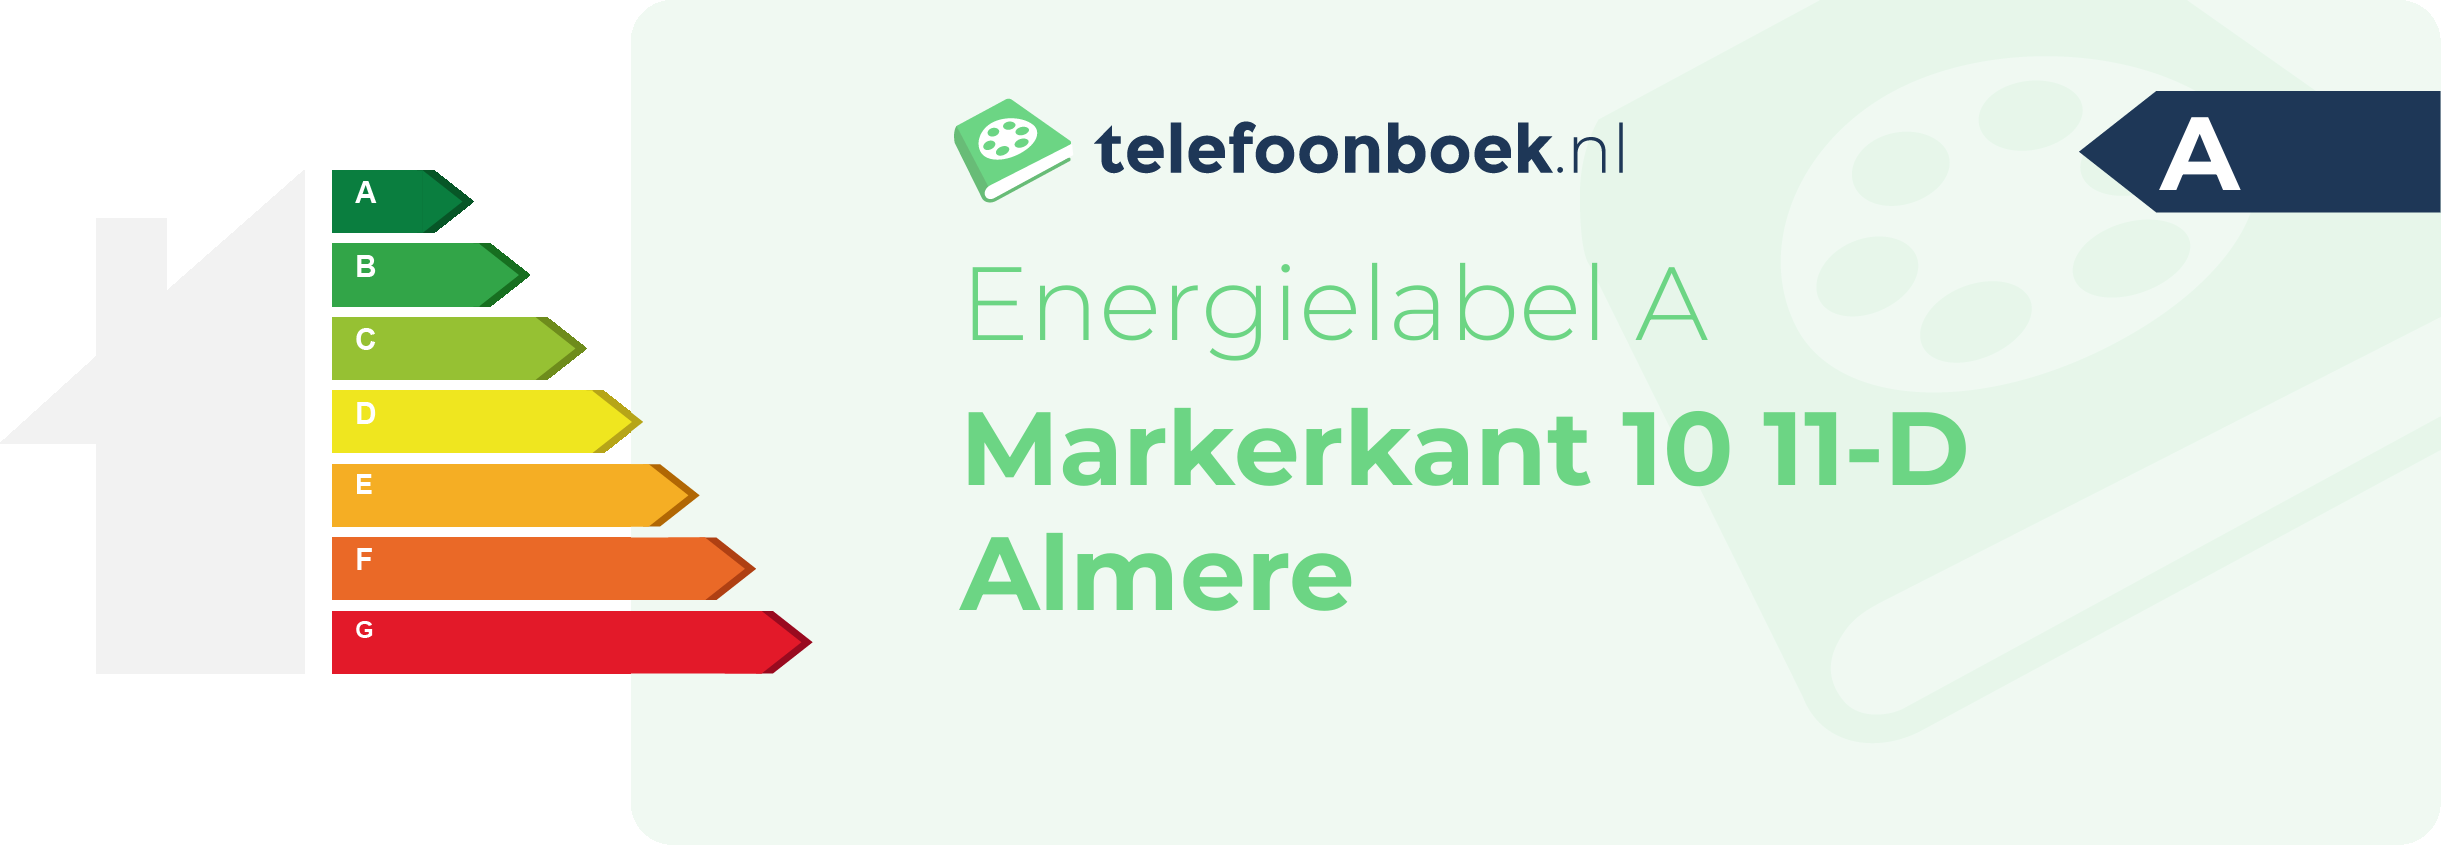 Energielabel Markerkant 10 11-D Almere